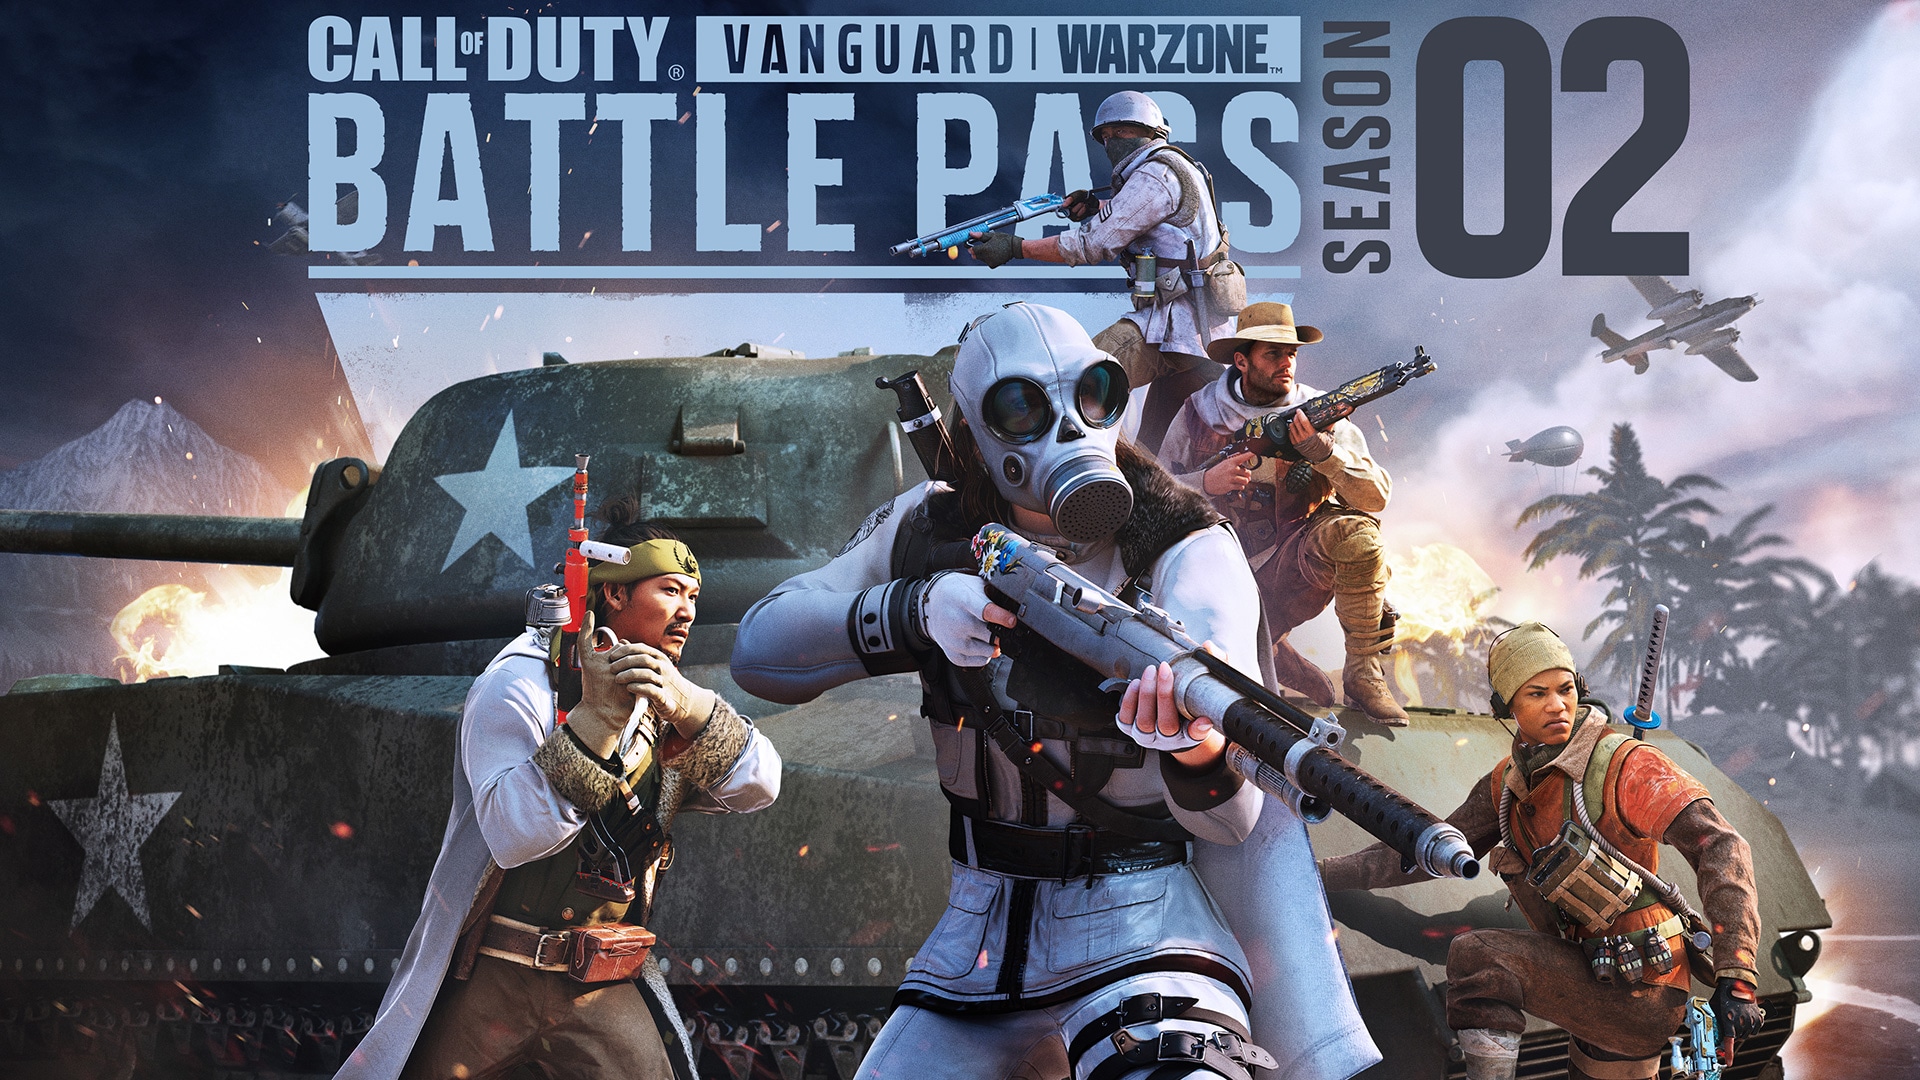 Refuerza tu arsenal con el Pase de batalla y los lotes de la temporada dos de Call of Duty®: Vanguard y Warzone™